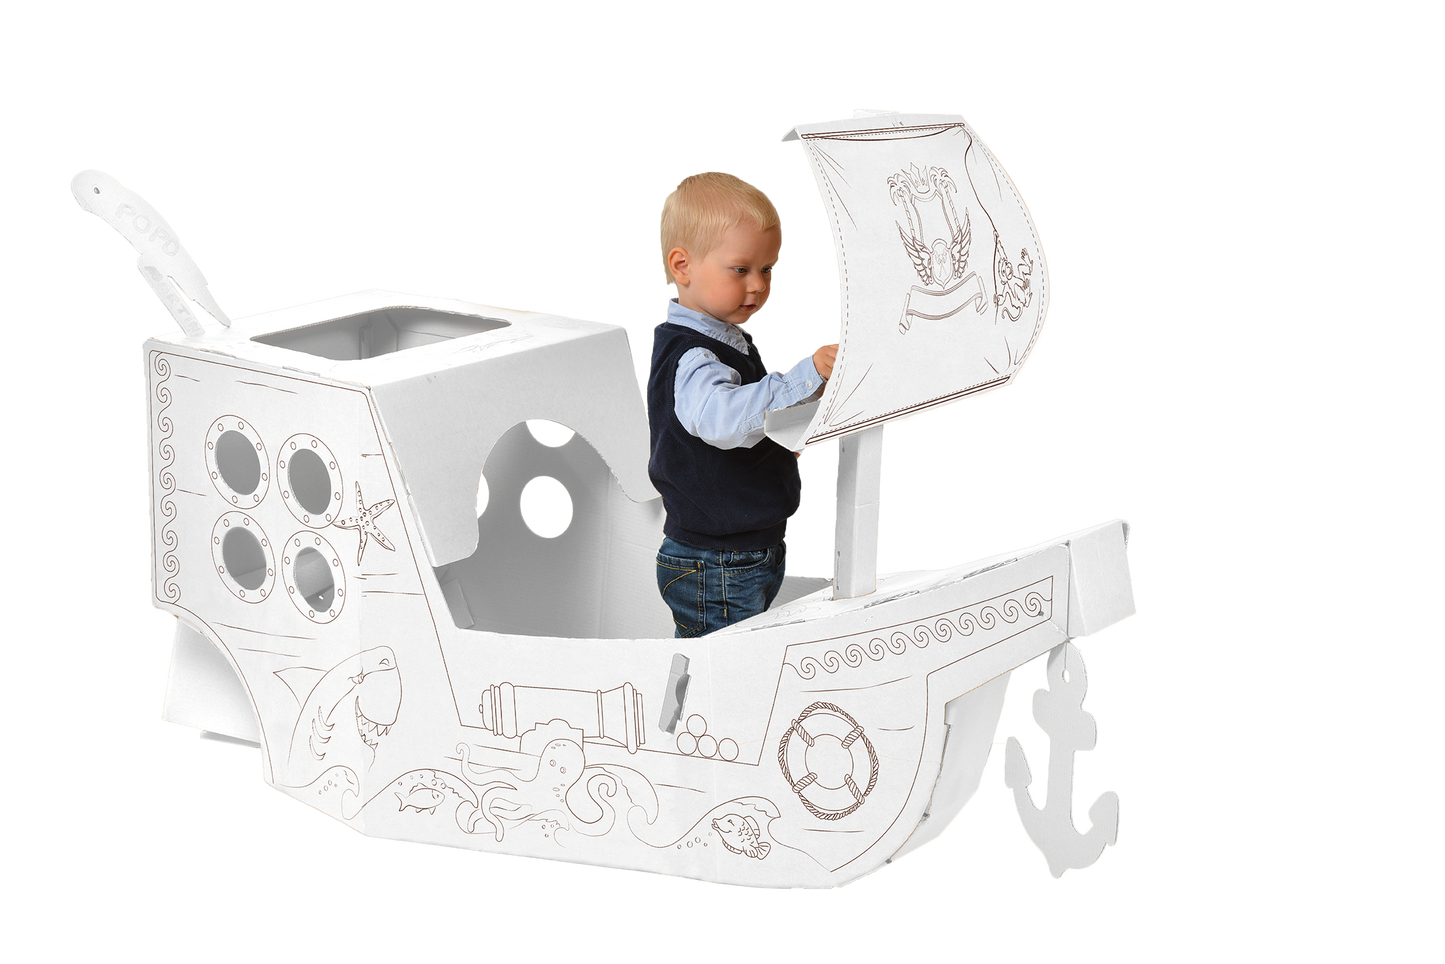 Radoša rotaļlieta, kartona pirātu kuģis, saliec un izkrāso pats, bērniem no 3+ gadiem